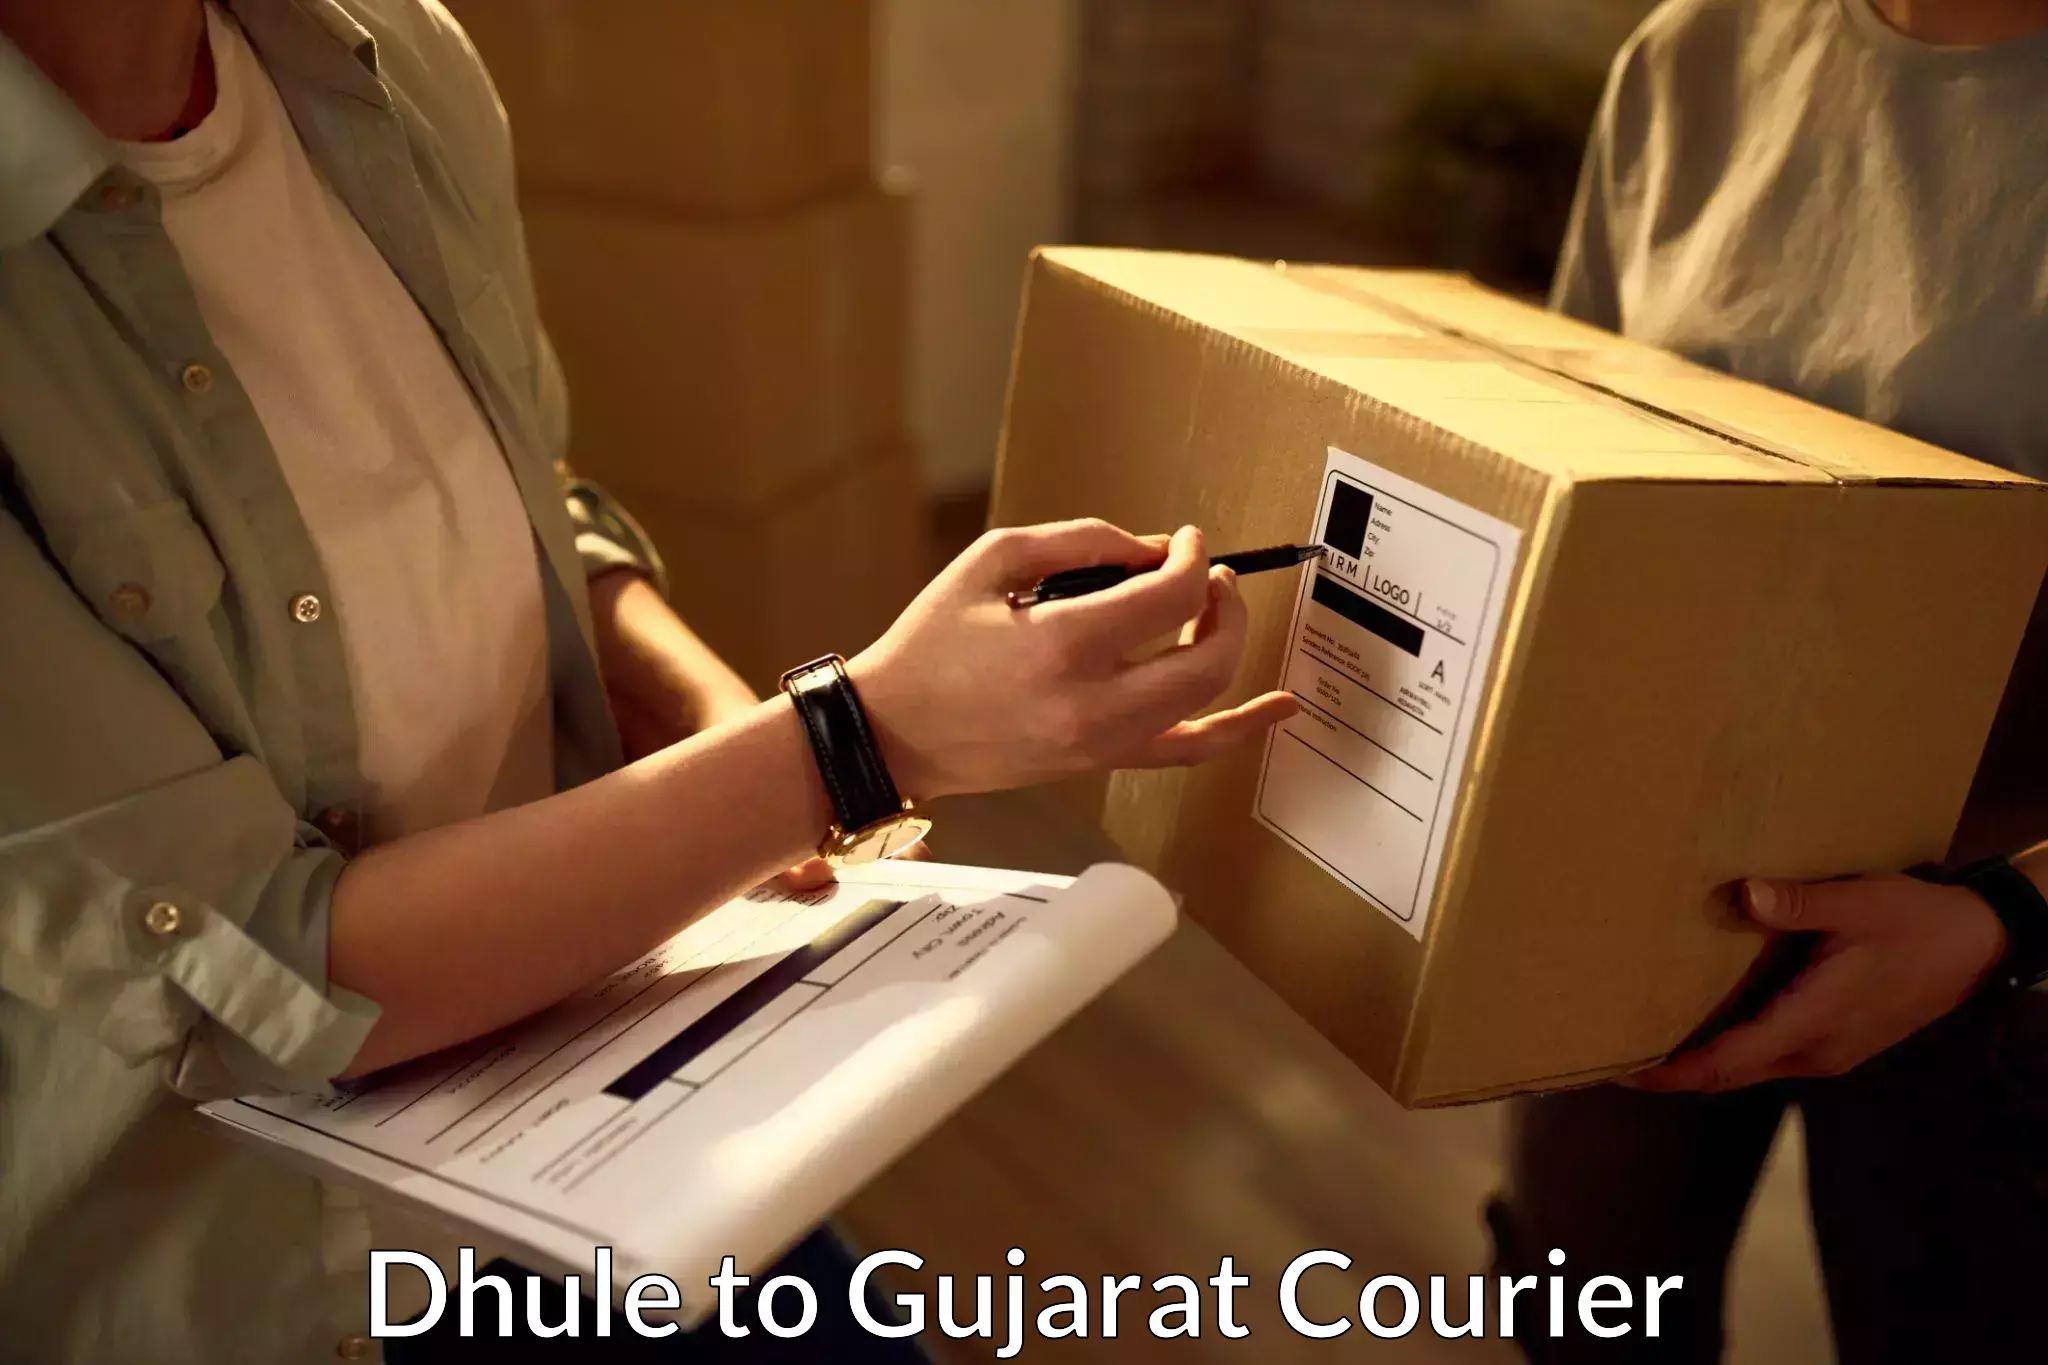 Efficient parcel service Dhule to Gujarat